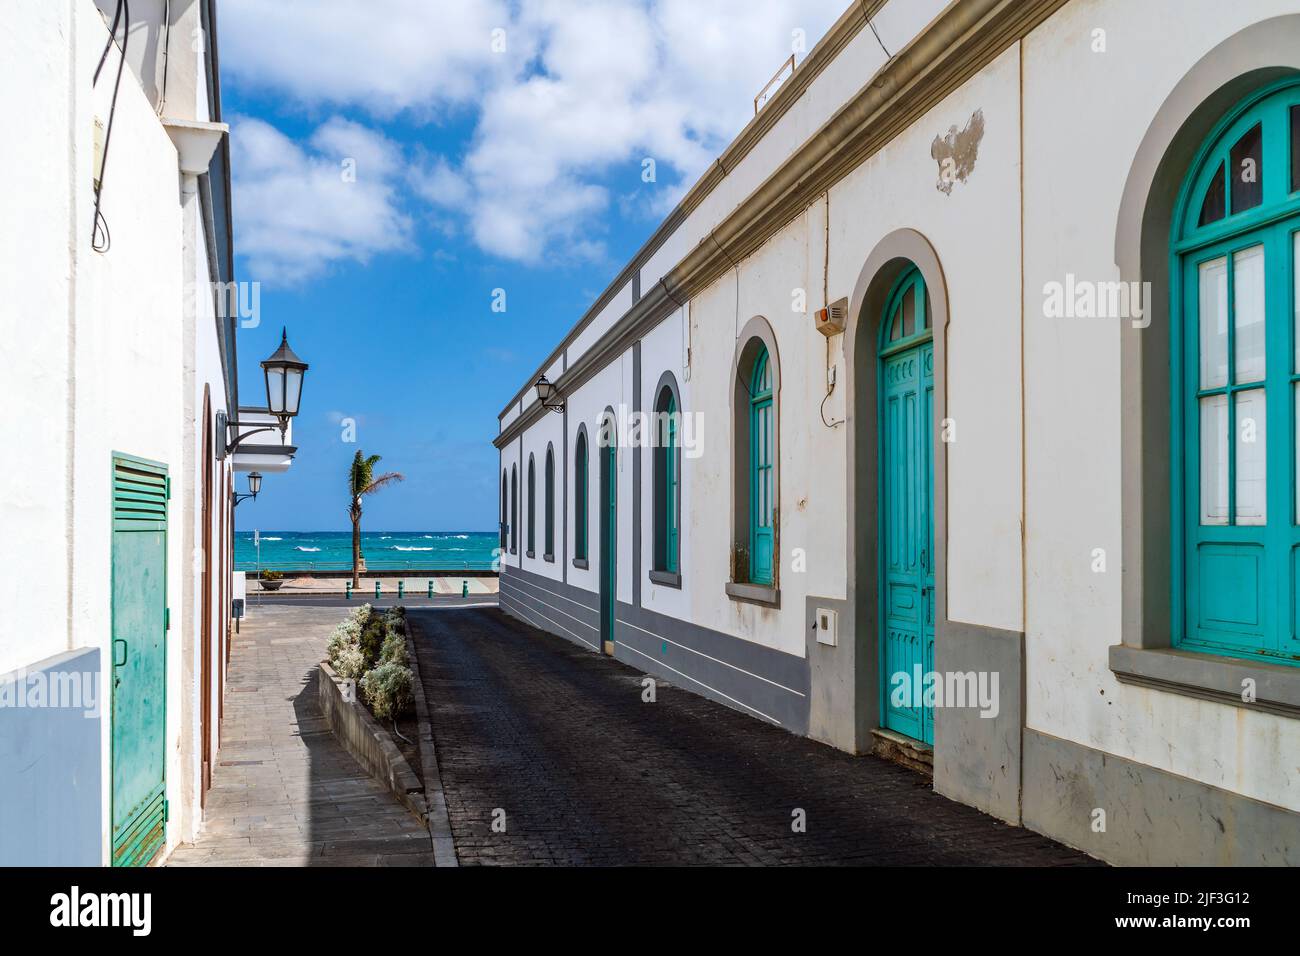 Encantadora calle tradicional con casas encaladas y coloridas ventanas y puertas en Arrecife, Lanzarote, Islas Canarias, España Foto de stock